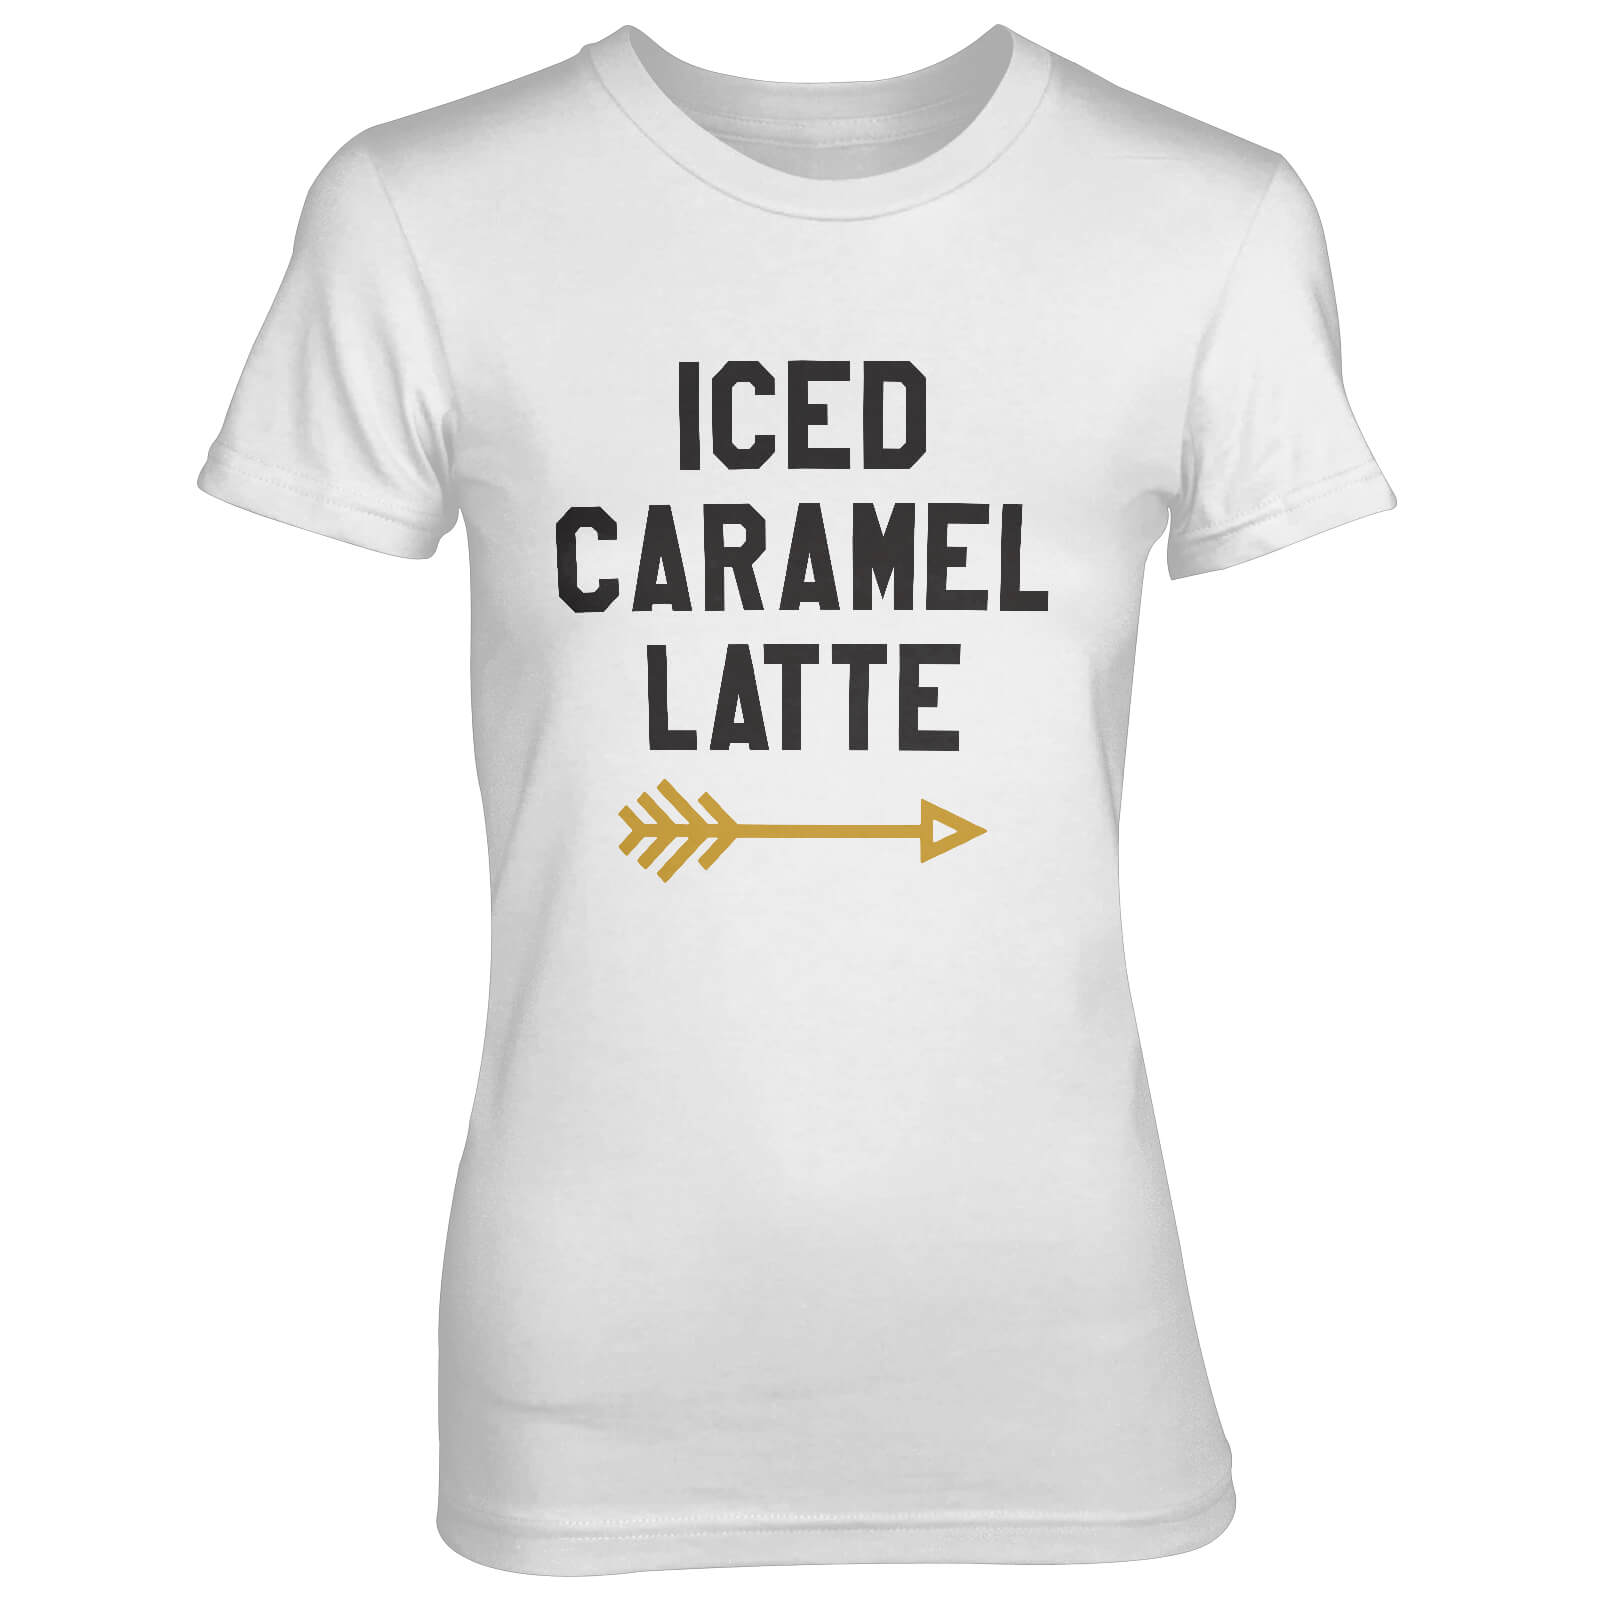 Iced Caramel Latte Women's White T-Shirt - S - White